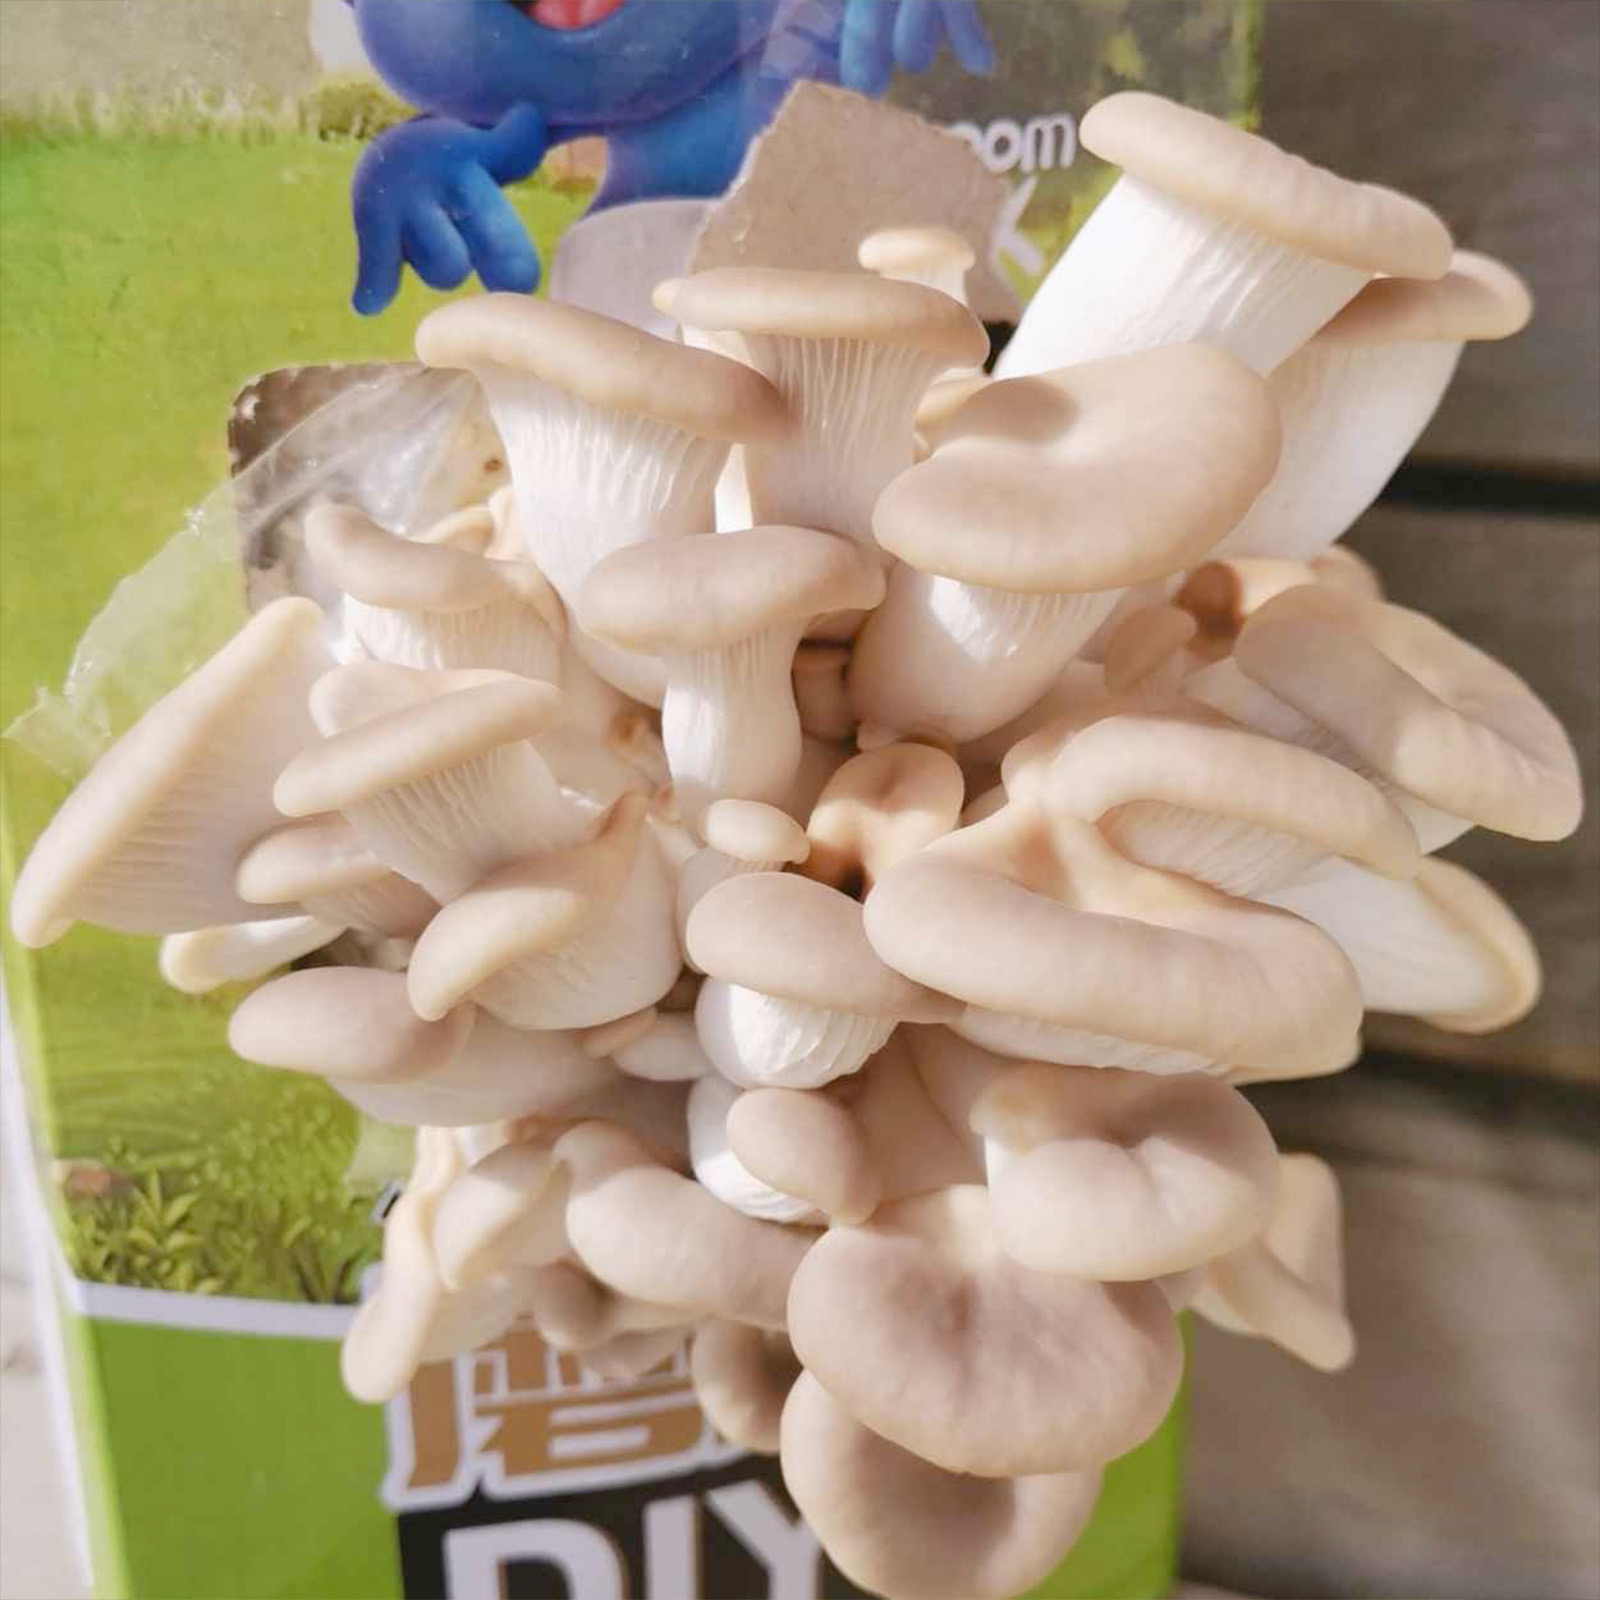 团购两盒装考拉精灵蘑菇种植diy秀珍菇可食用菌菇家庭幼儿园亲子游戏